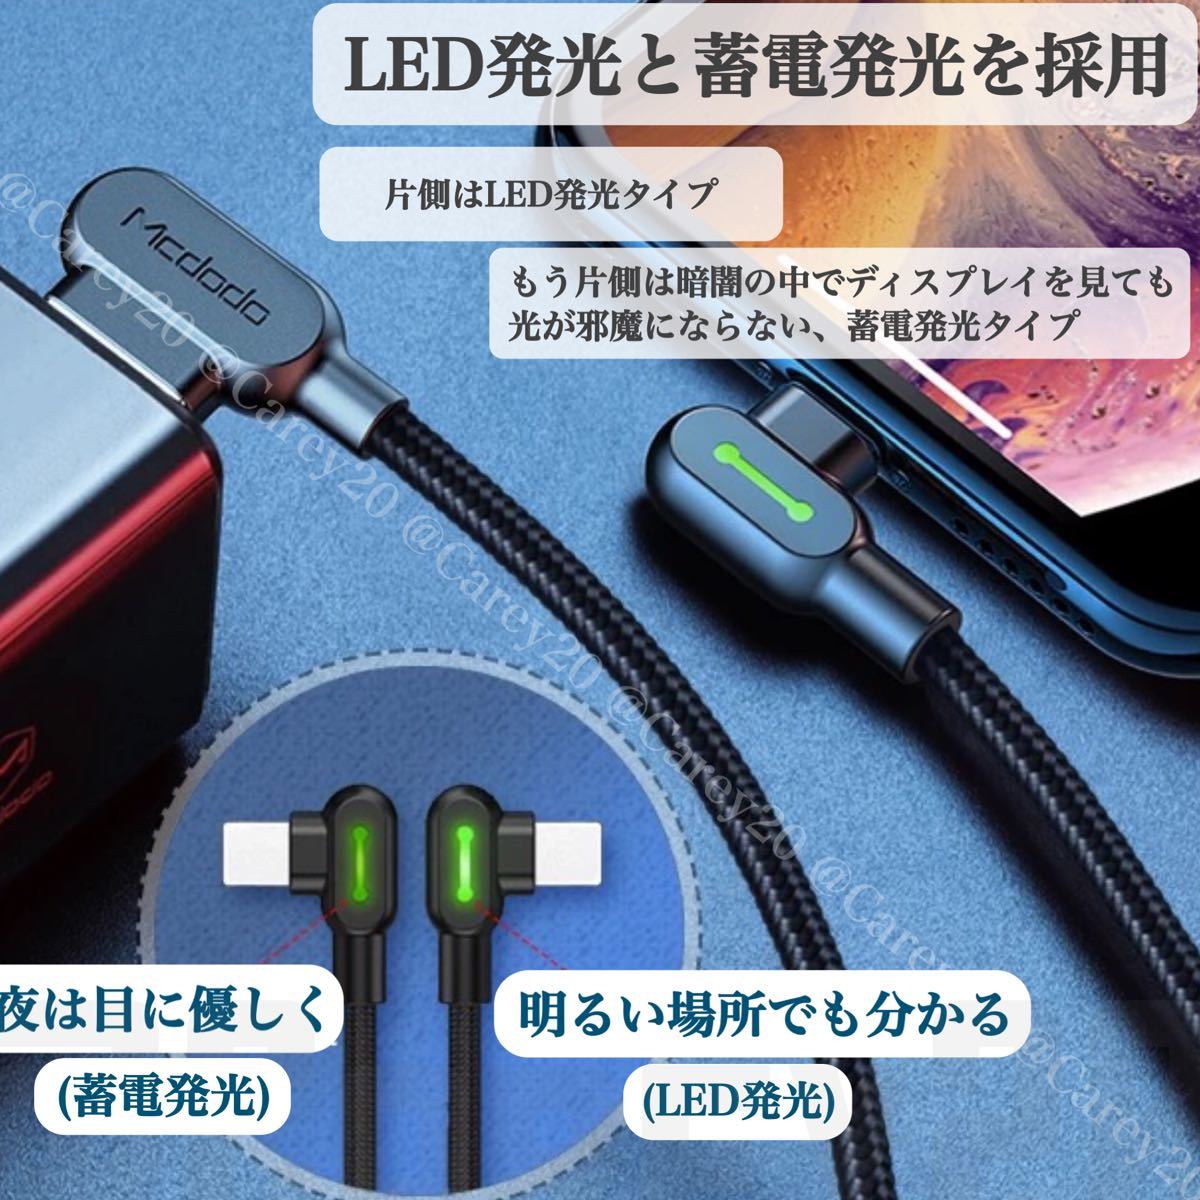 ◆2本◆ L字型 1.8m/mcdodo社 充電 ケーブル ライトニングケーブル iPhone 急速 充電器 USB データ転送